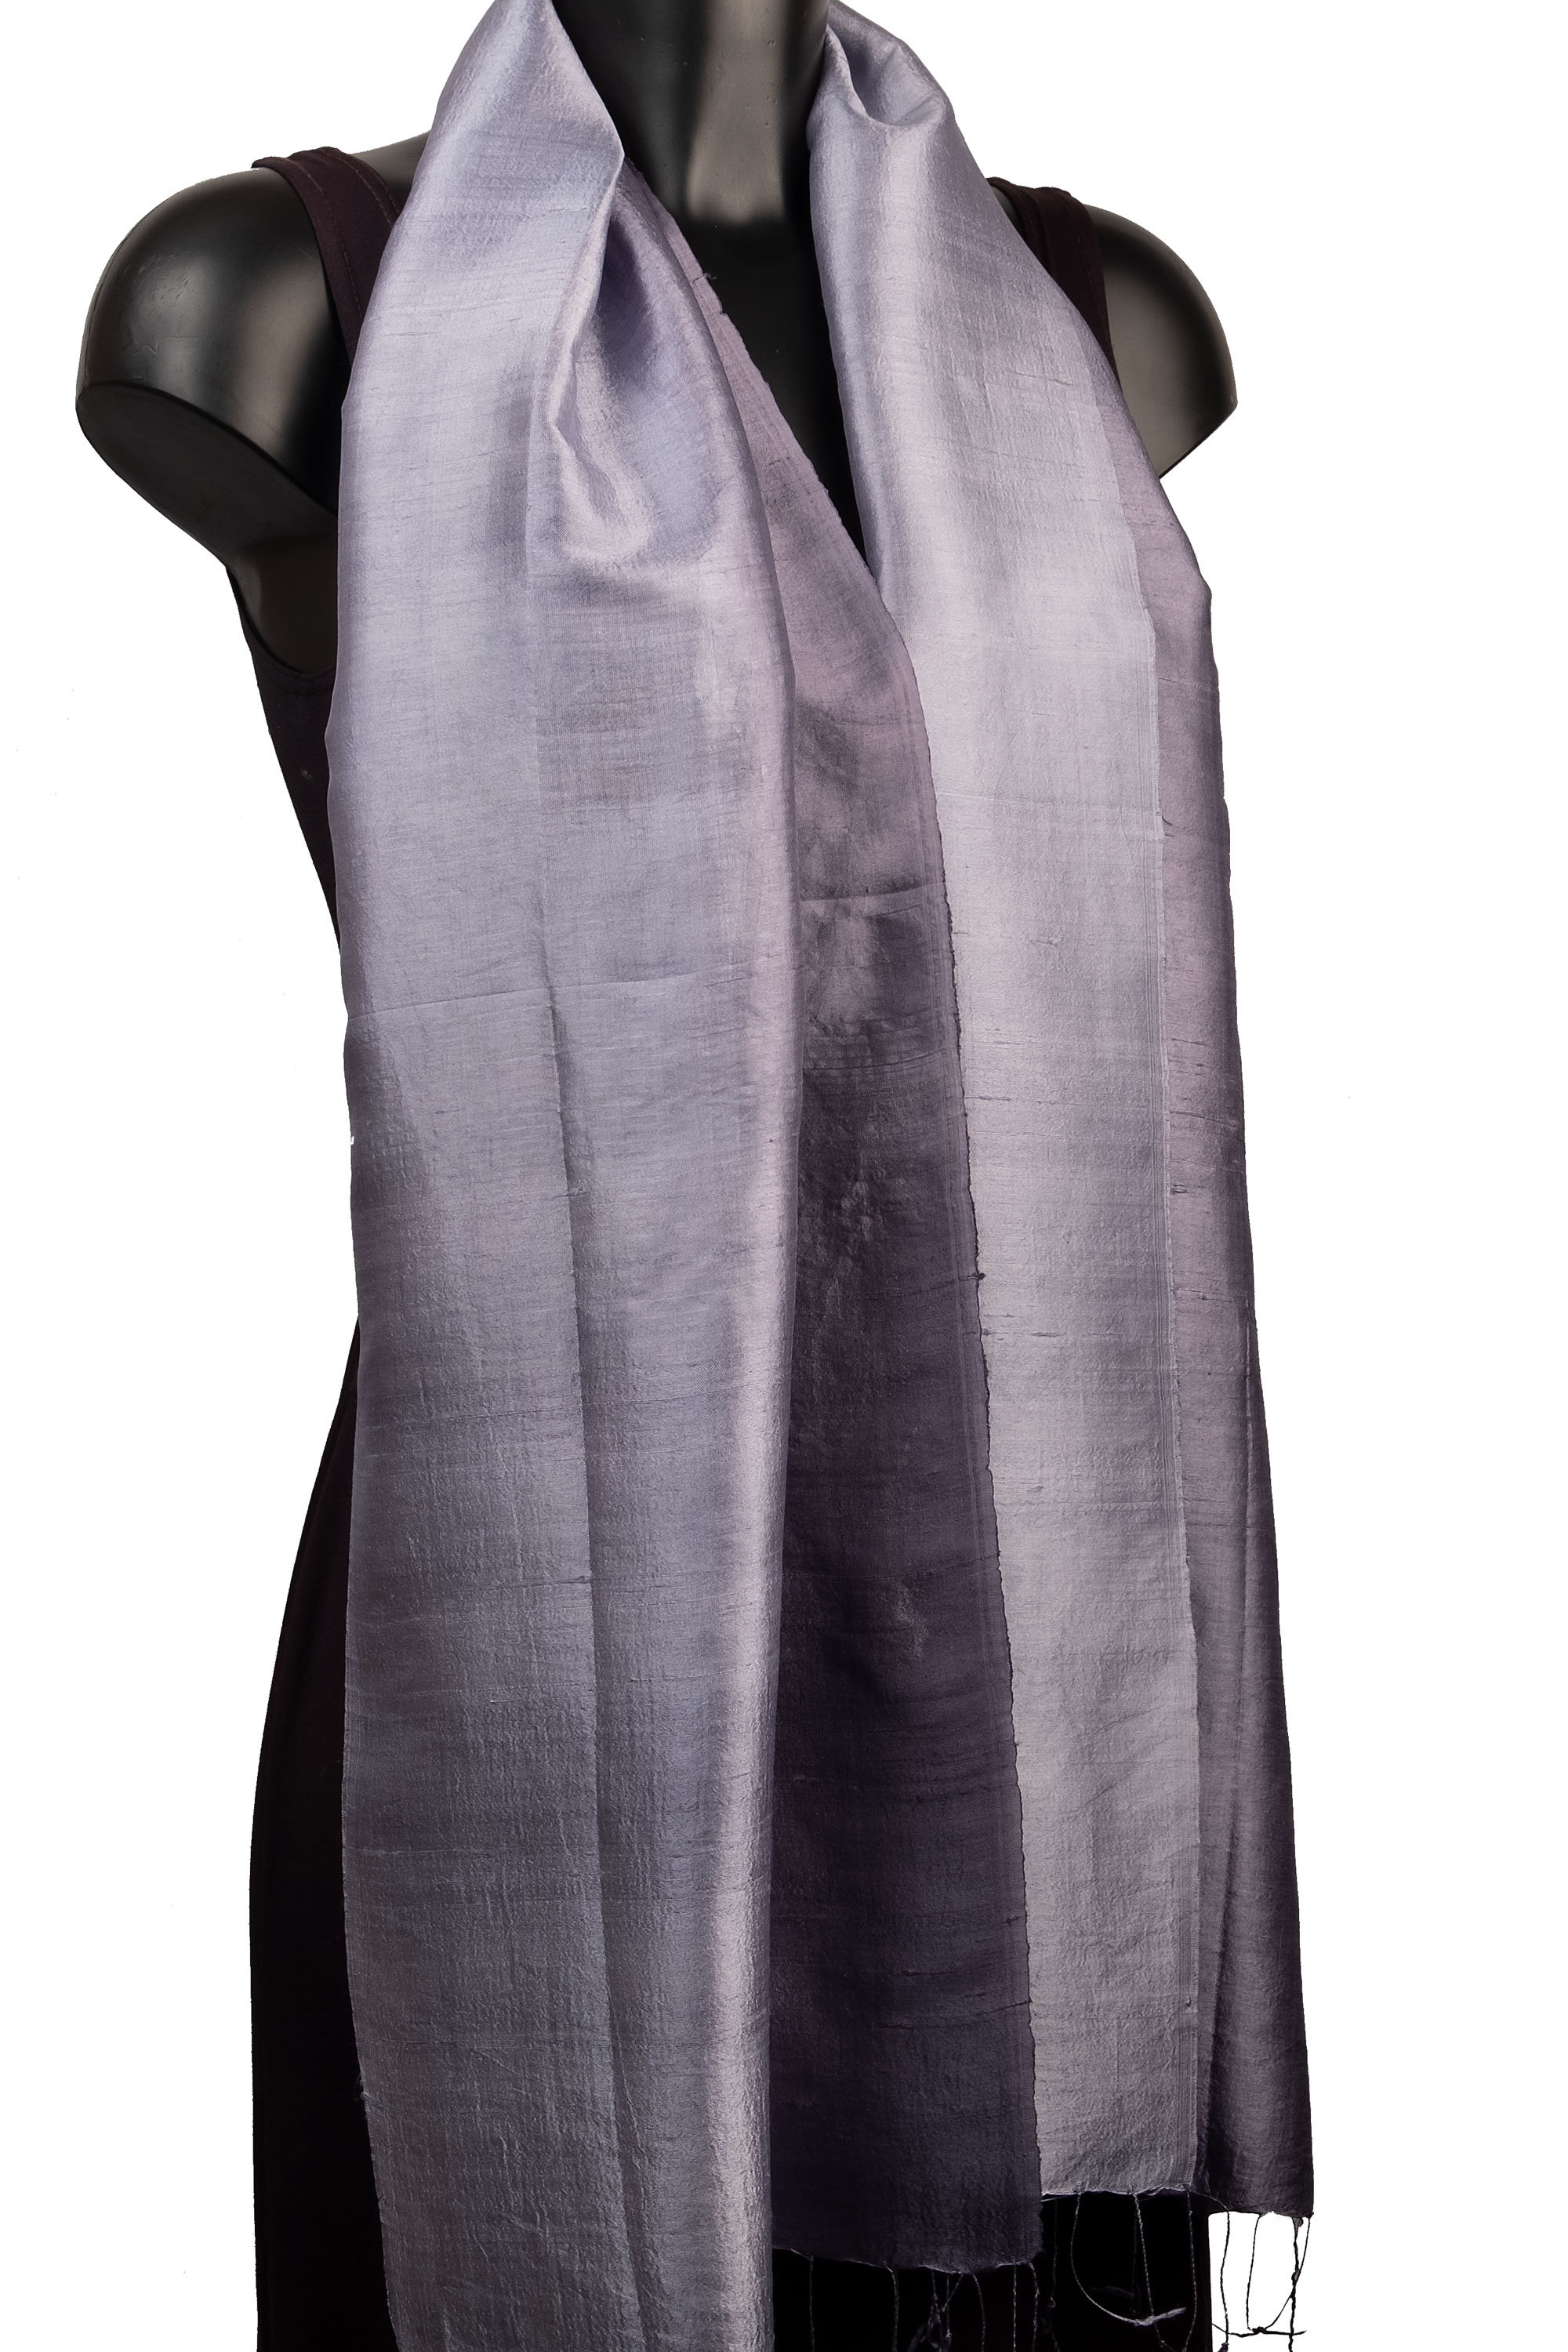 Grey Silk Scarf, Silver Scarf, Raw Silk Scarves, Elegant Gray Scarf, Two Tone Silk Scarf, Charcoal Scarf Silk, Shiny Scarf, York Scarves